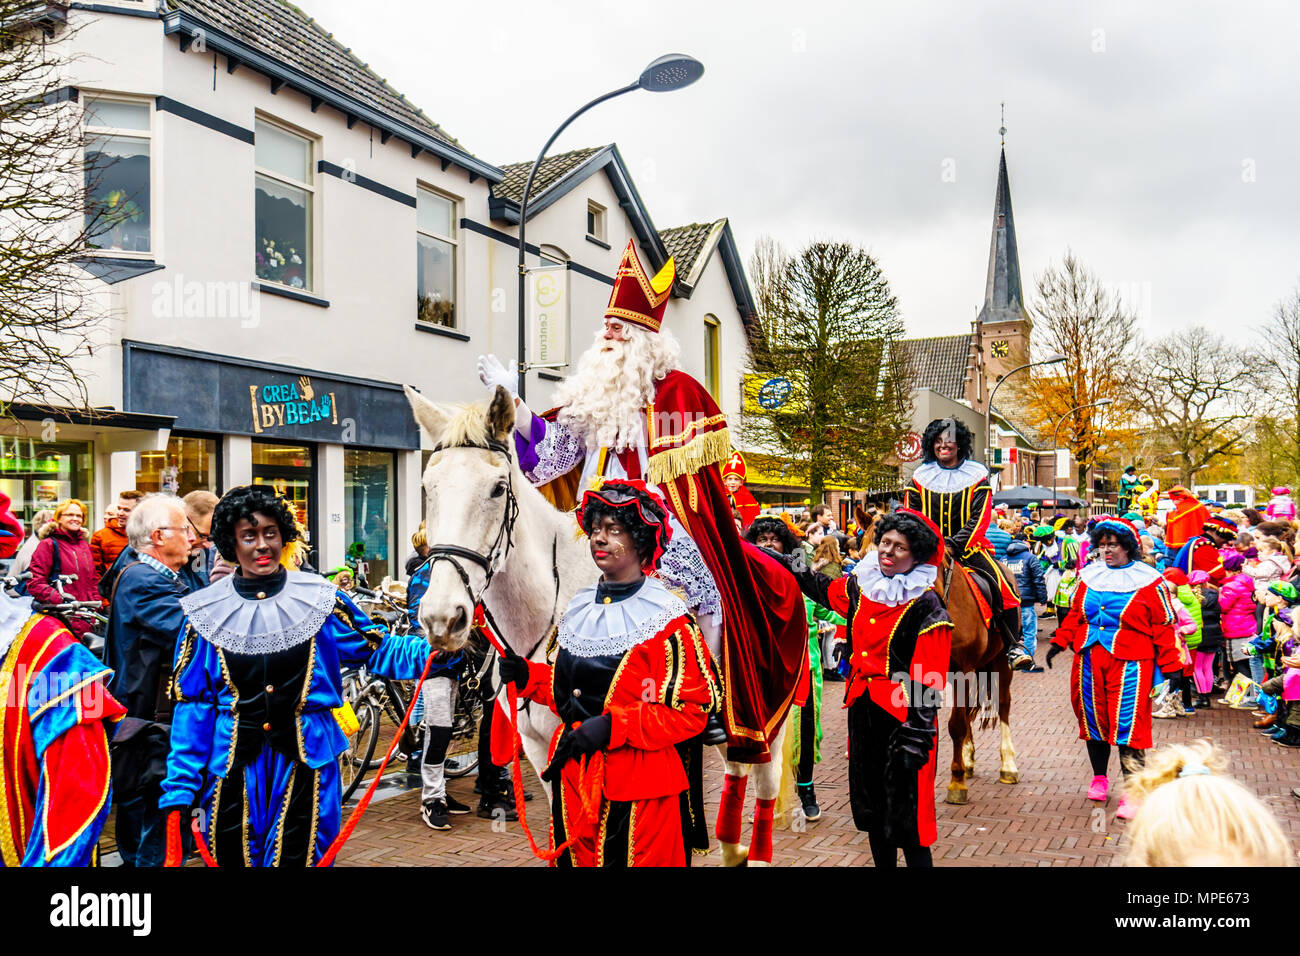 La famosa y alegre llegada anual de San Nicolás el día 5 de diciembre en el centro de la ciudad de Ermelo, en los Países Bajos Foto de stock